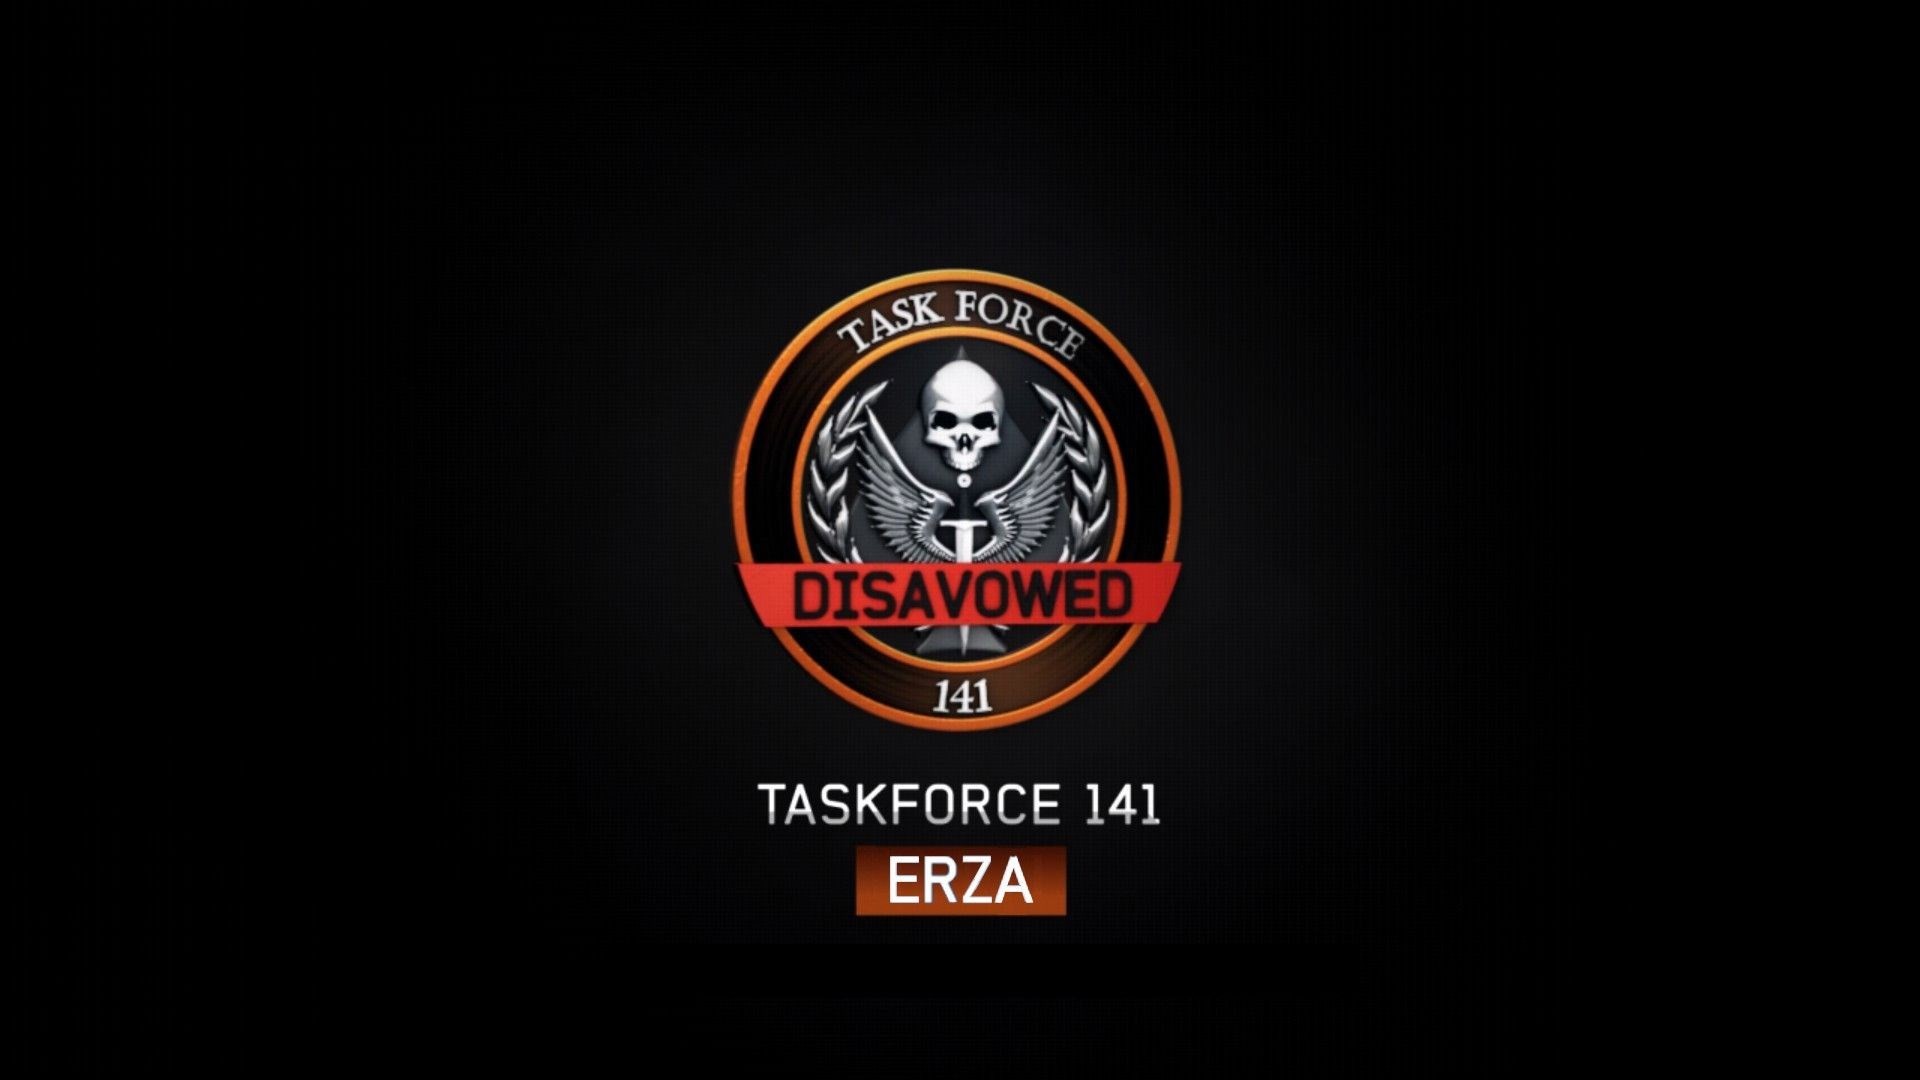 Task force 141 hd wallpaper